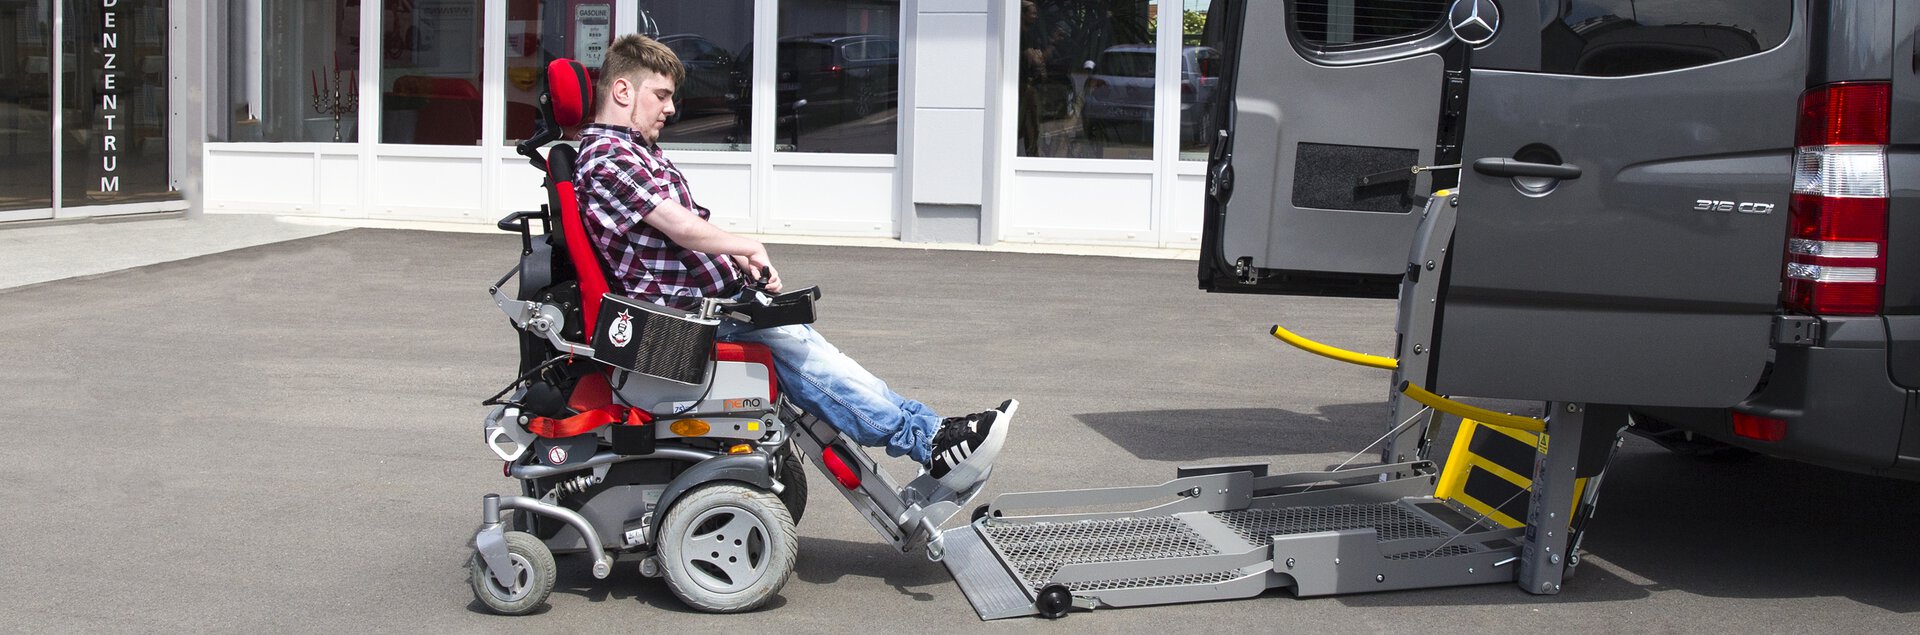 Sonderanfertigung: Ladehilfe, um Rollstuhl im Auto zu transportieren | © Pohlig GmbH